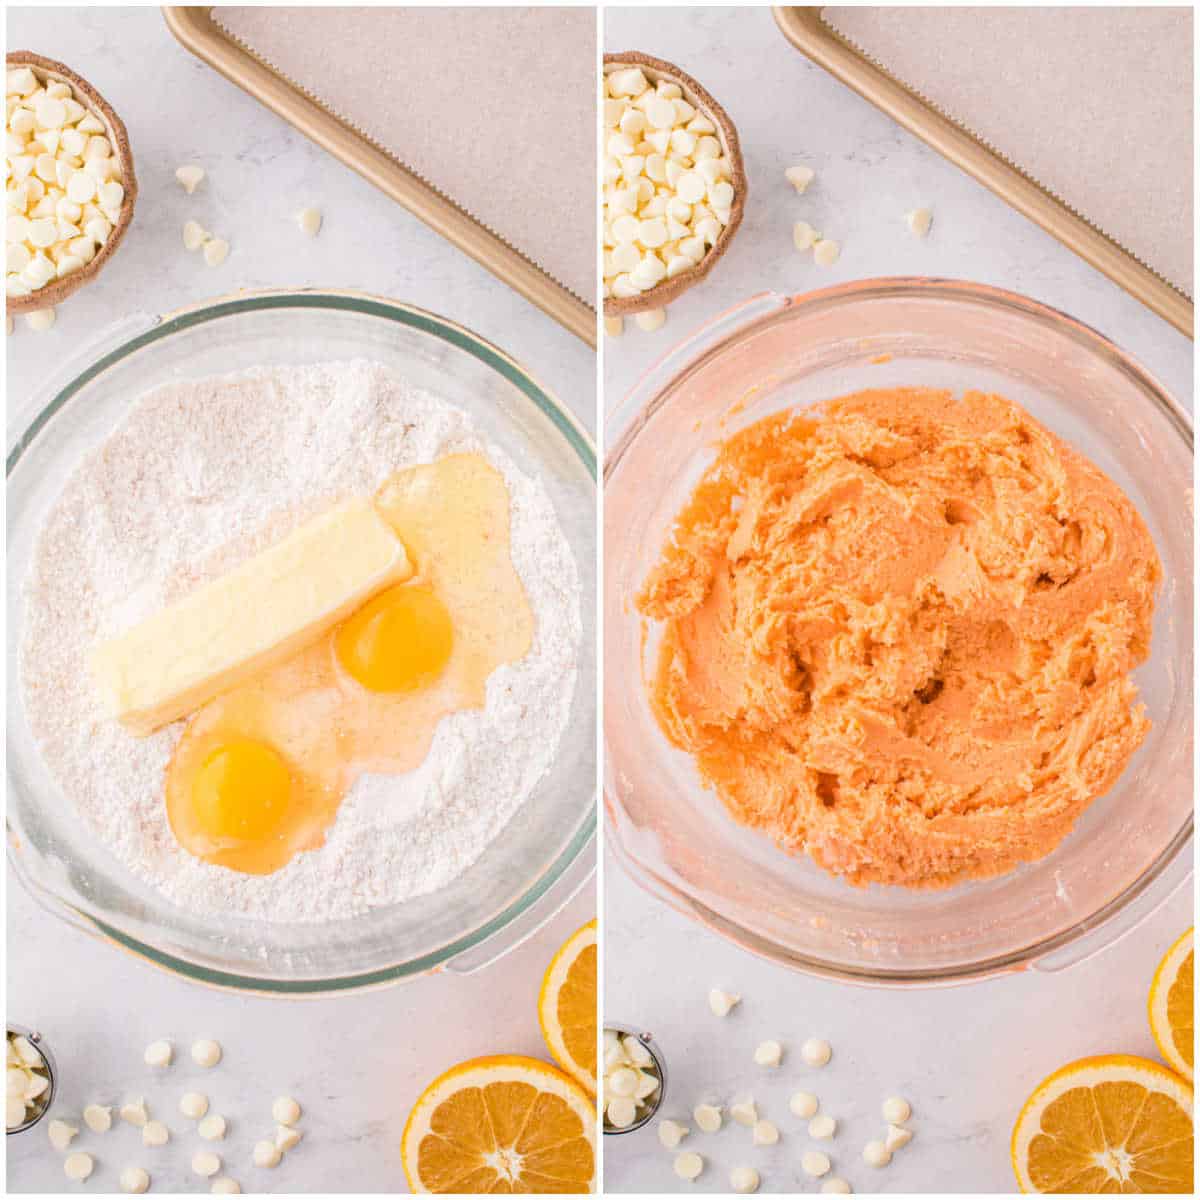 Steps to make orange creamsicle cookies.